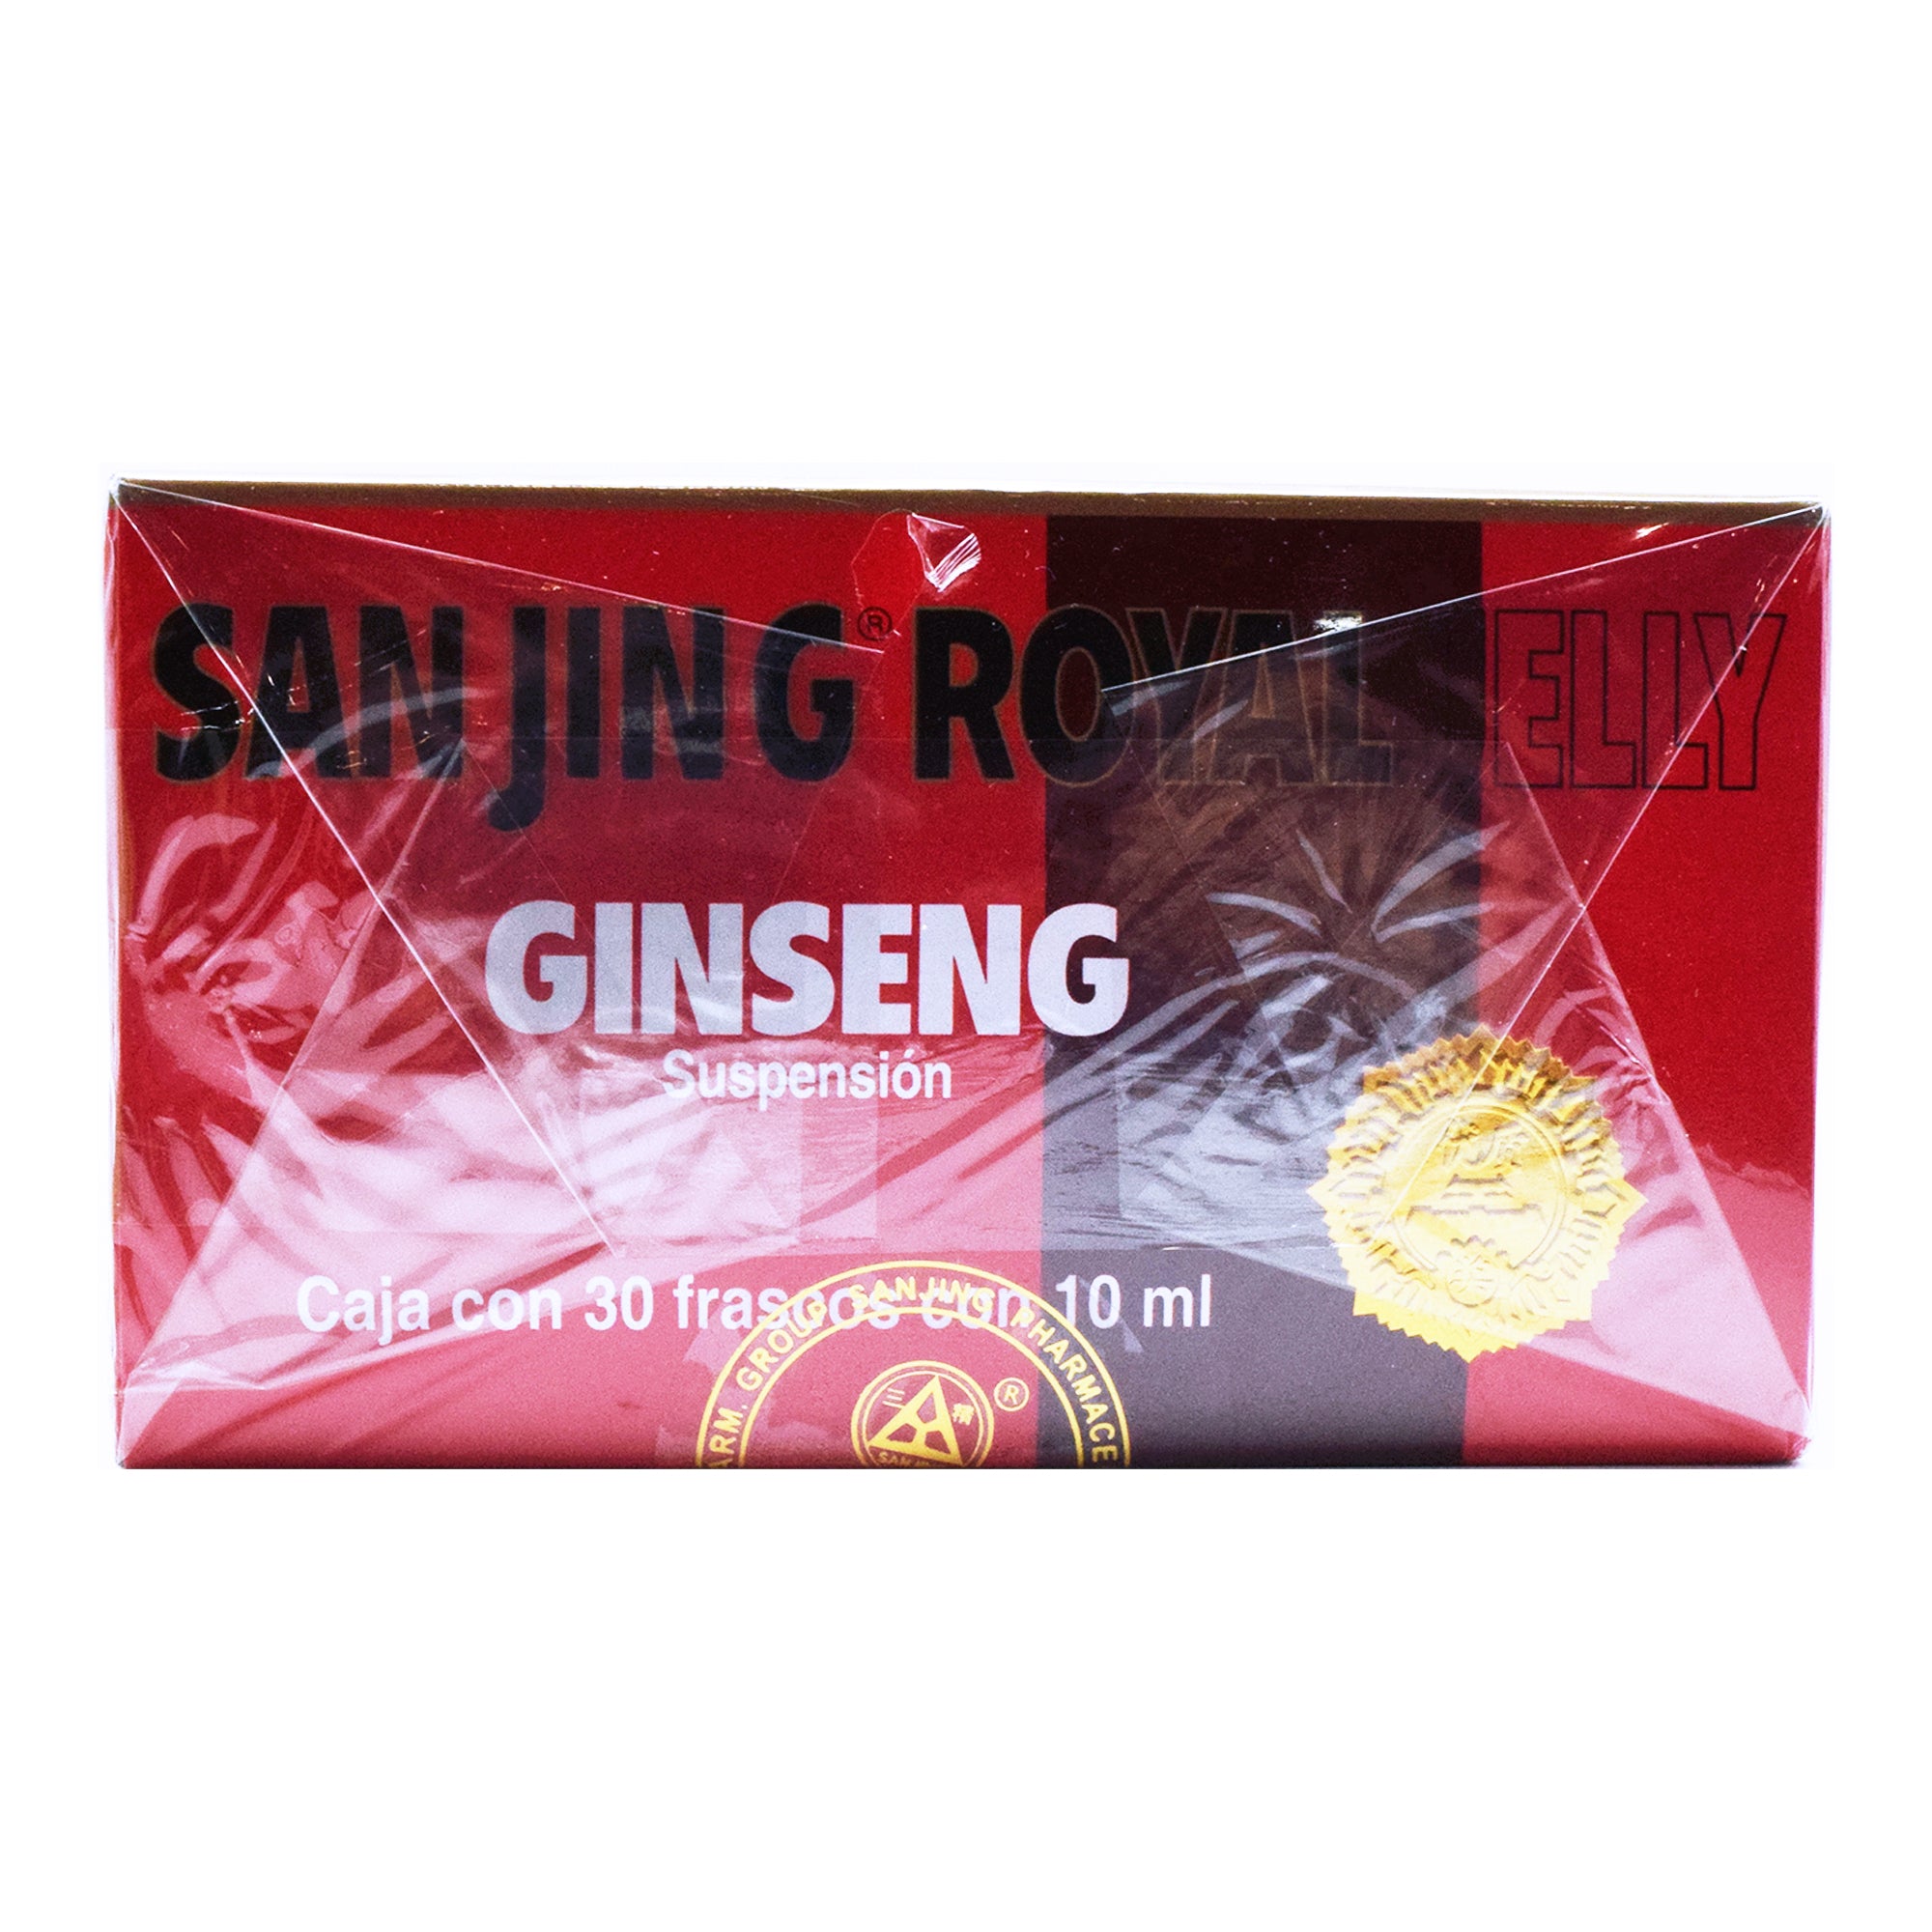 Ginseng Sanjing Royal Jelly 30 X 10 Ml